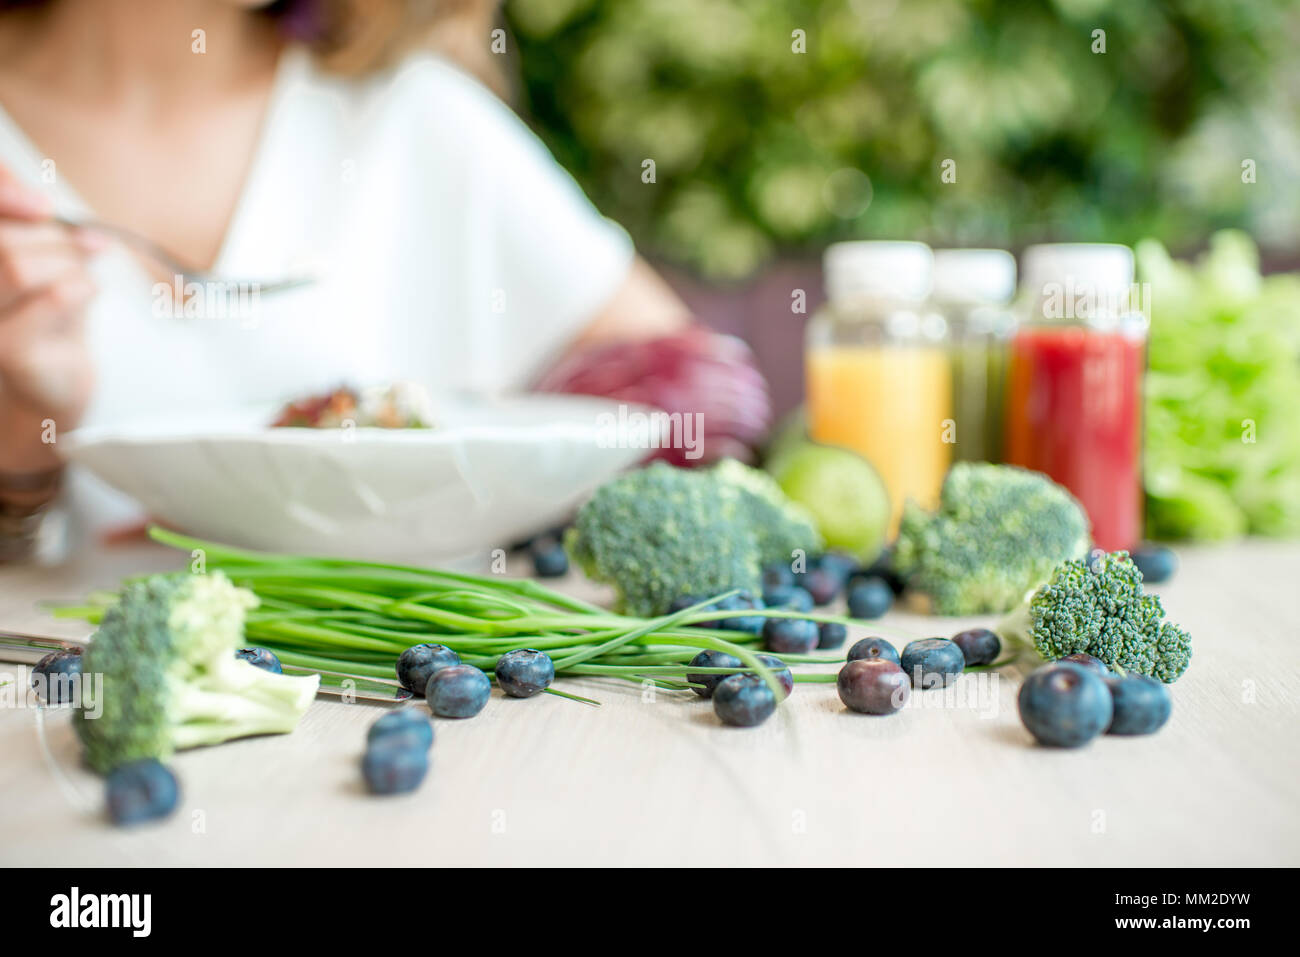 Una sana alimentazione vegetariana con i frullati sul tavolo Foto Stock